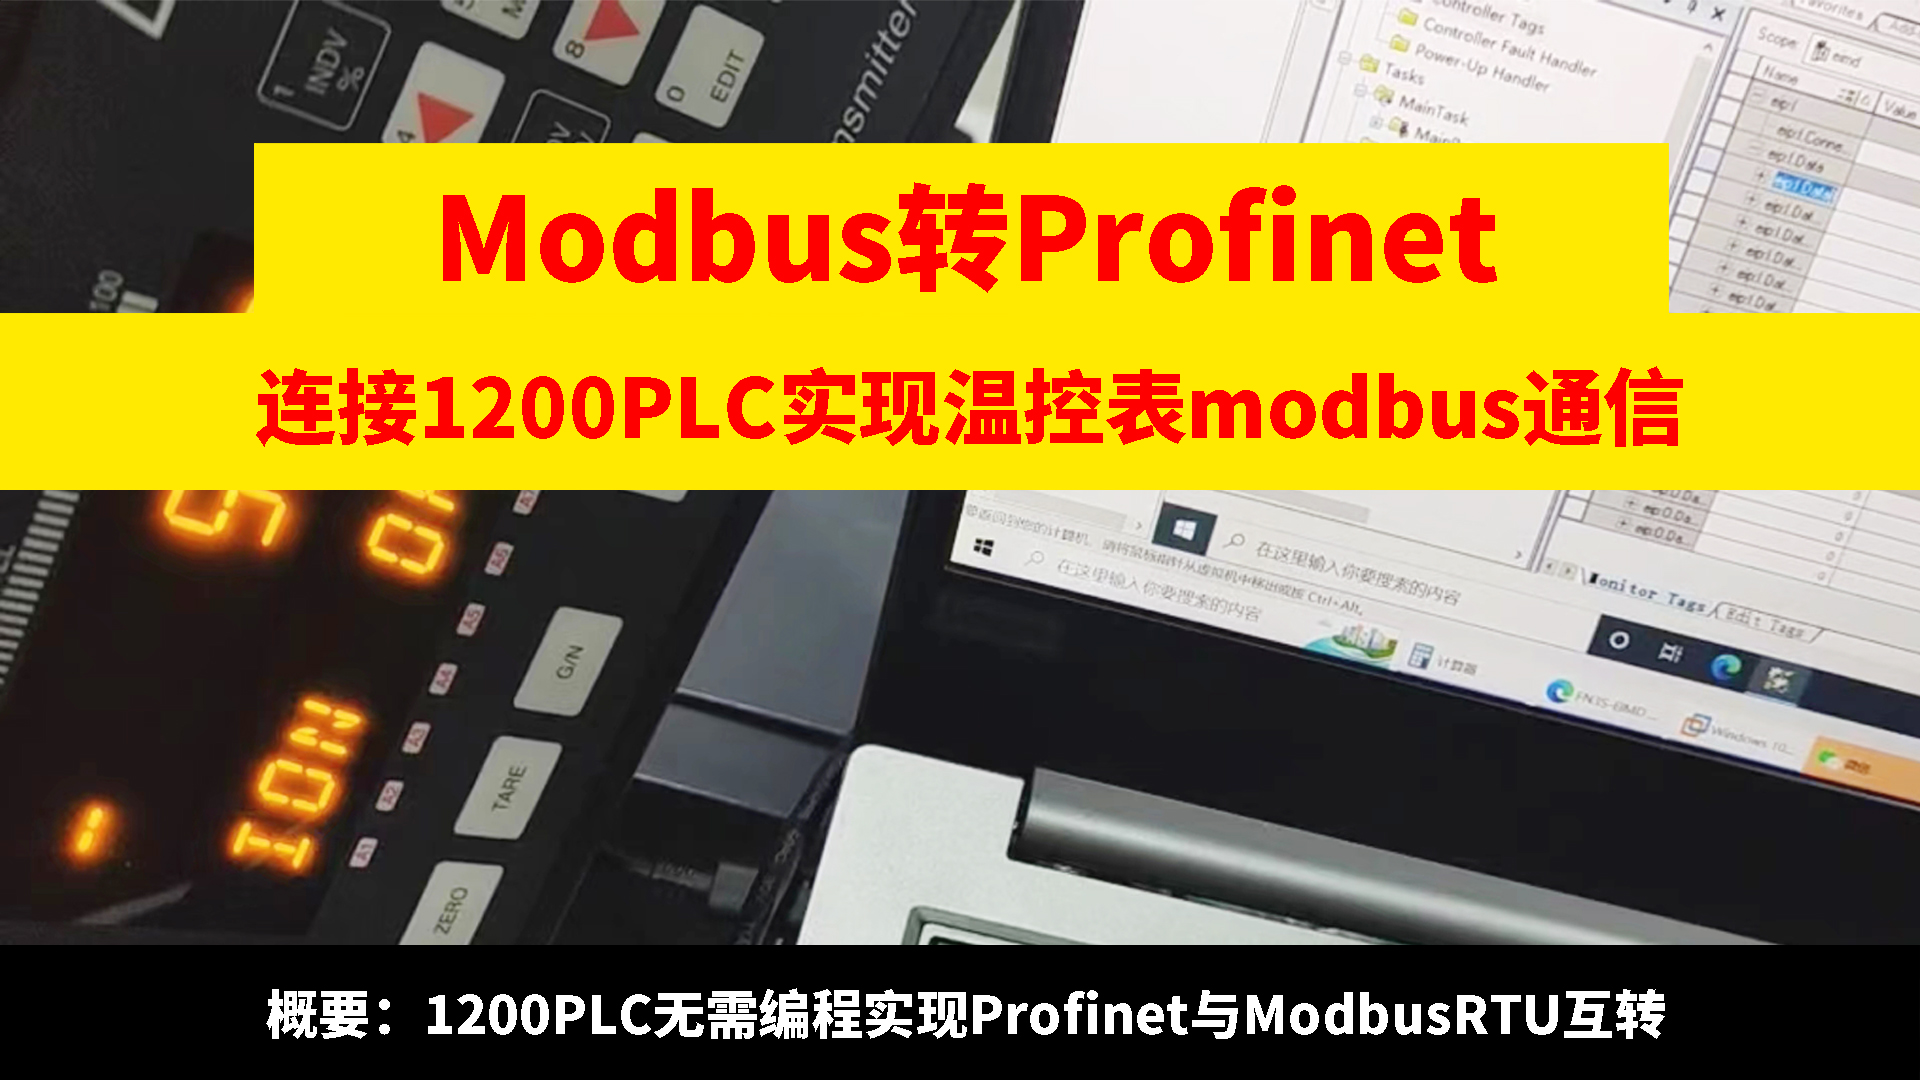 modbus轉profinet網關連接1200 PLC與溫控表modbus通信# 485轉profine